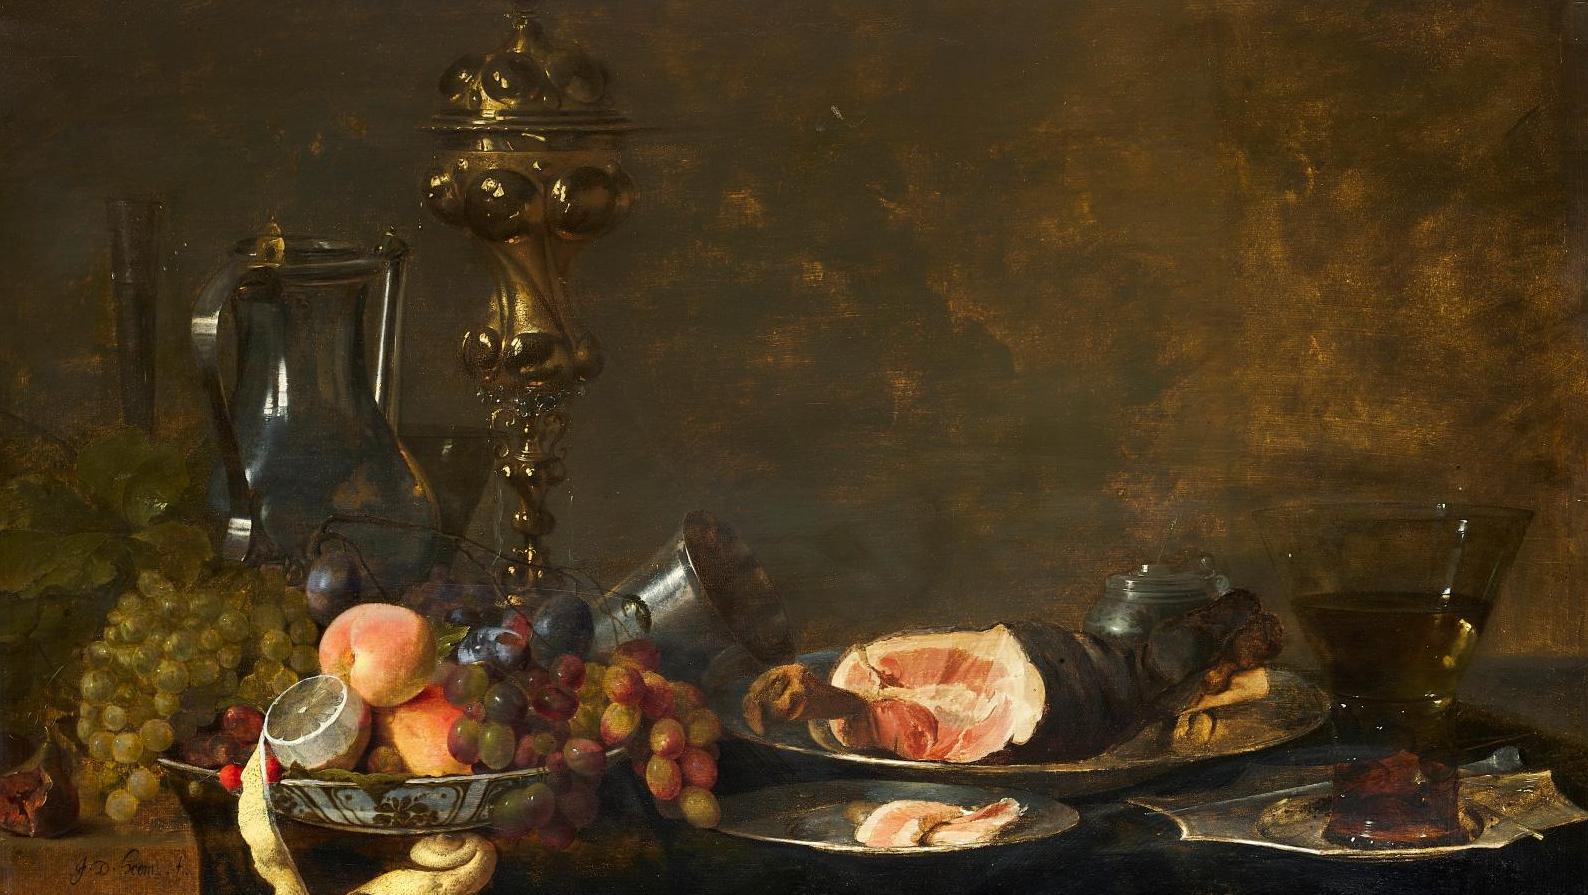 Jan Davidsz de Heem (1606-1684), Pêches, raisins et citron dans un bol wanli en porcelaine... Le banquet symbolique de Jan Davidsz de Heem